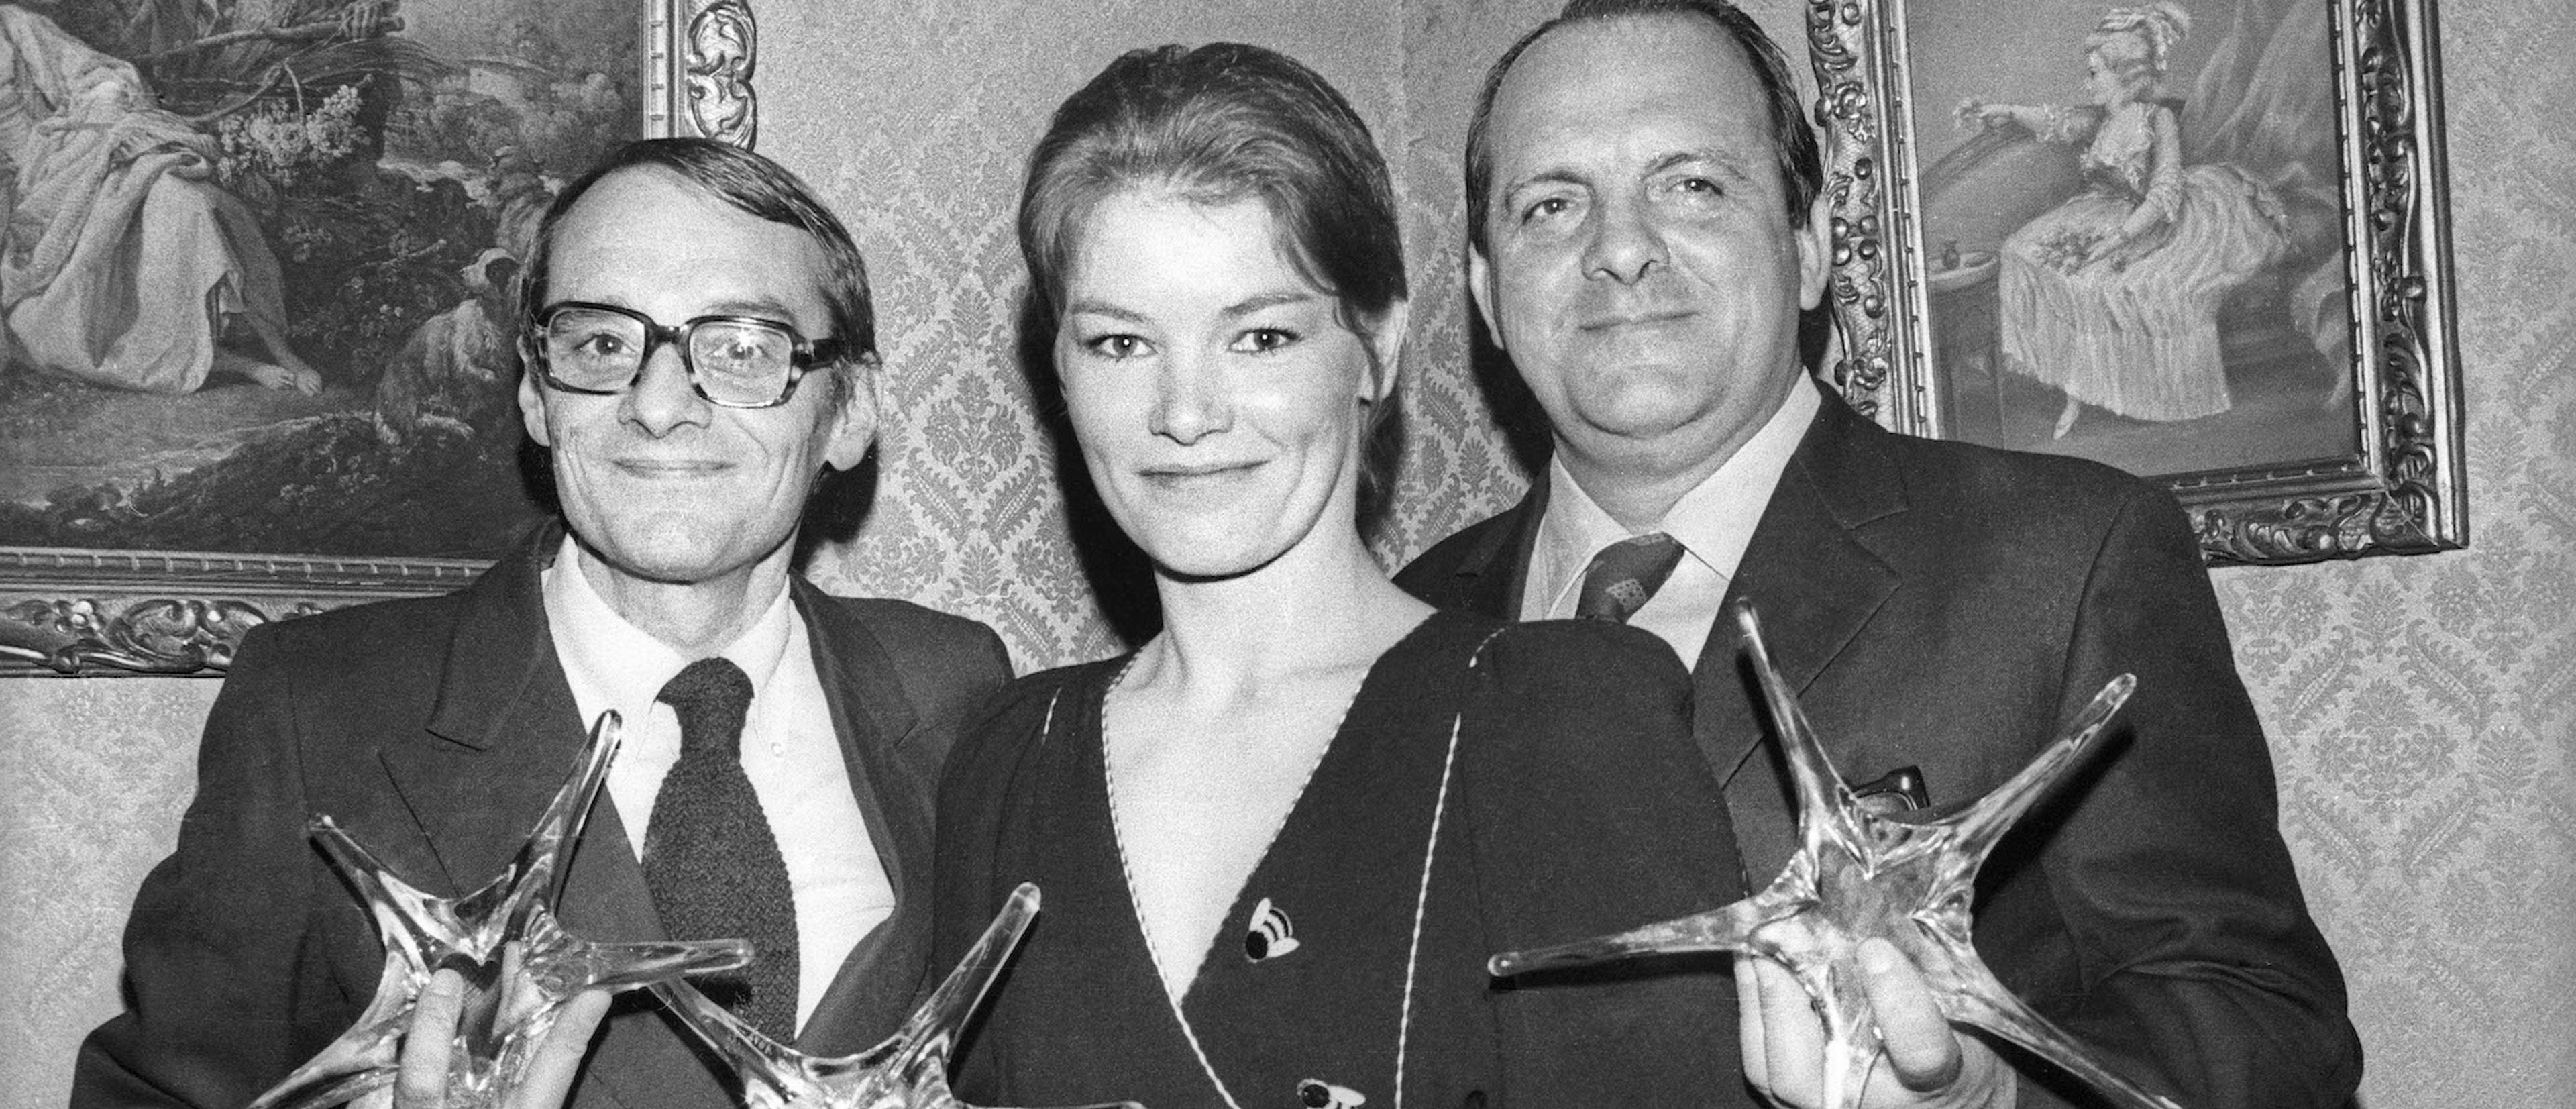 Glenda Jackson, junto a Rene Alio y Damiano Damiani, en una imagen del año 1972